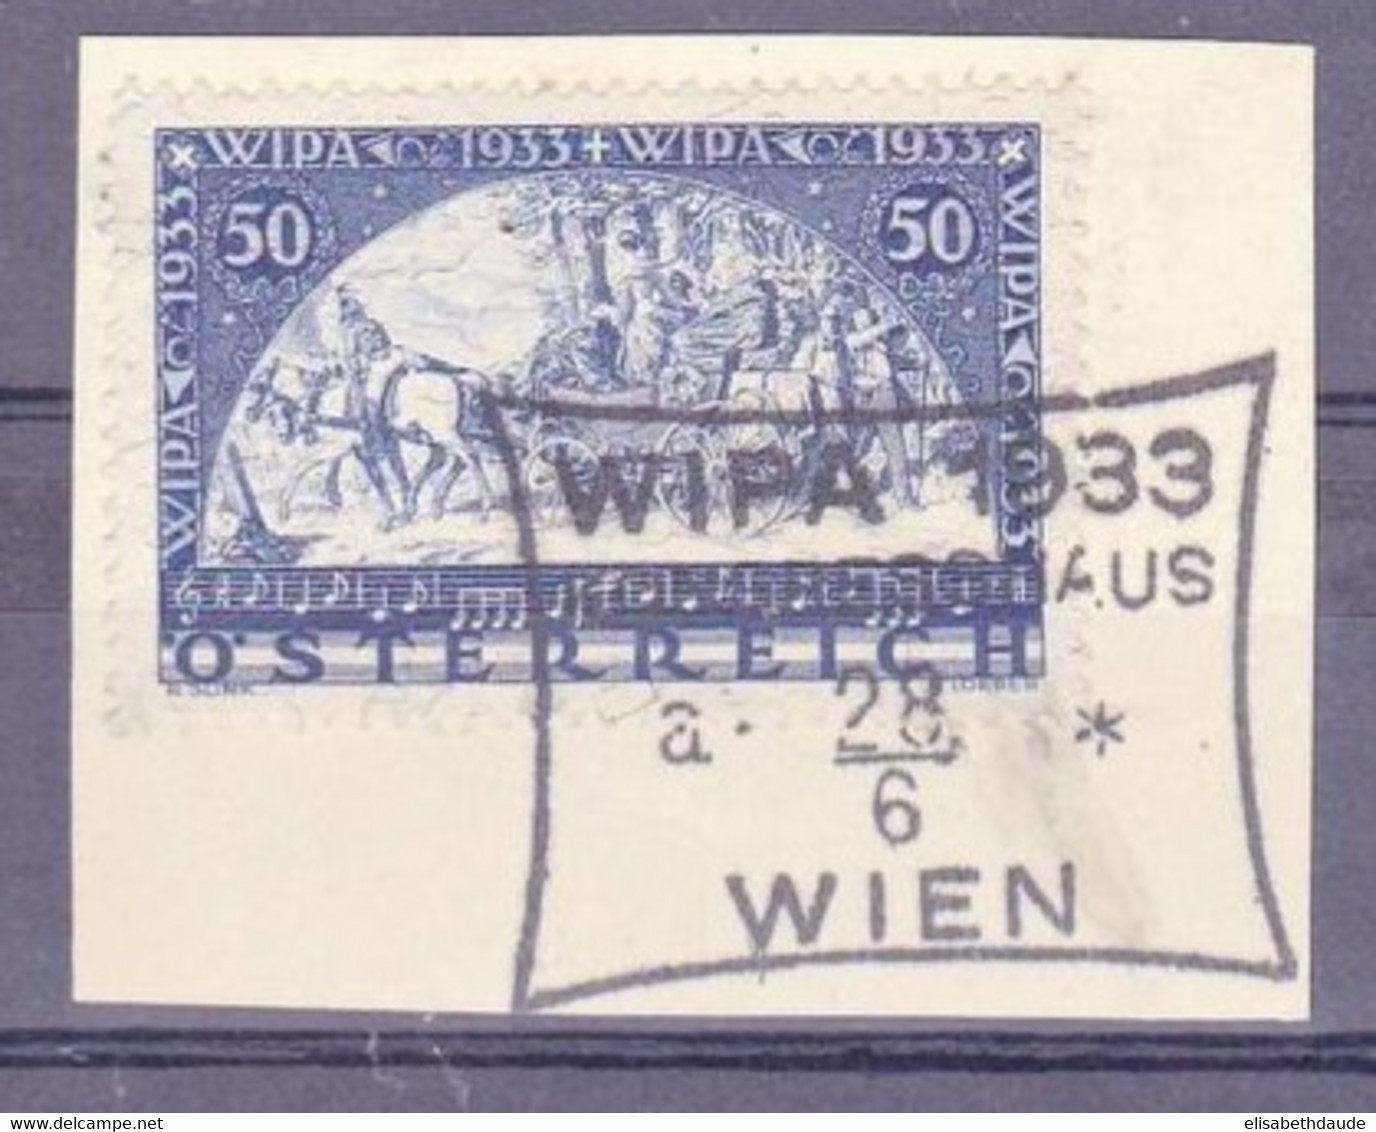 AUTRICHE - 1933 - YVERT N° 430a Avec FILS DE SOIE Sur FRAGMENT Avec OBLITERATION WIPA 1933 - COTE : 725 EUROS+++ - Gebruikt